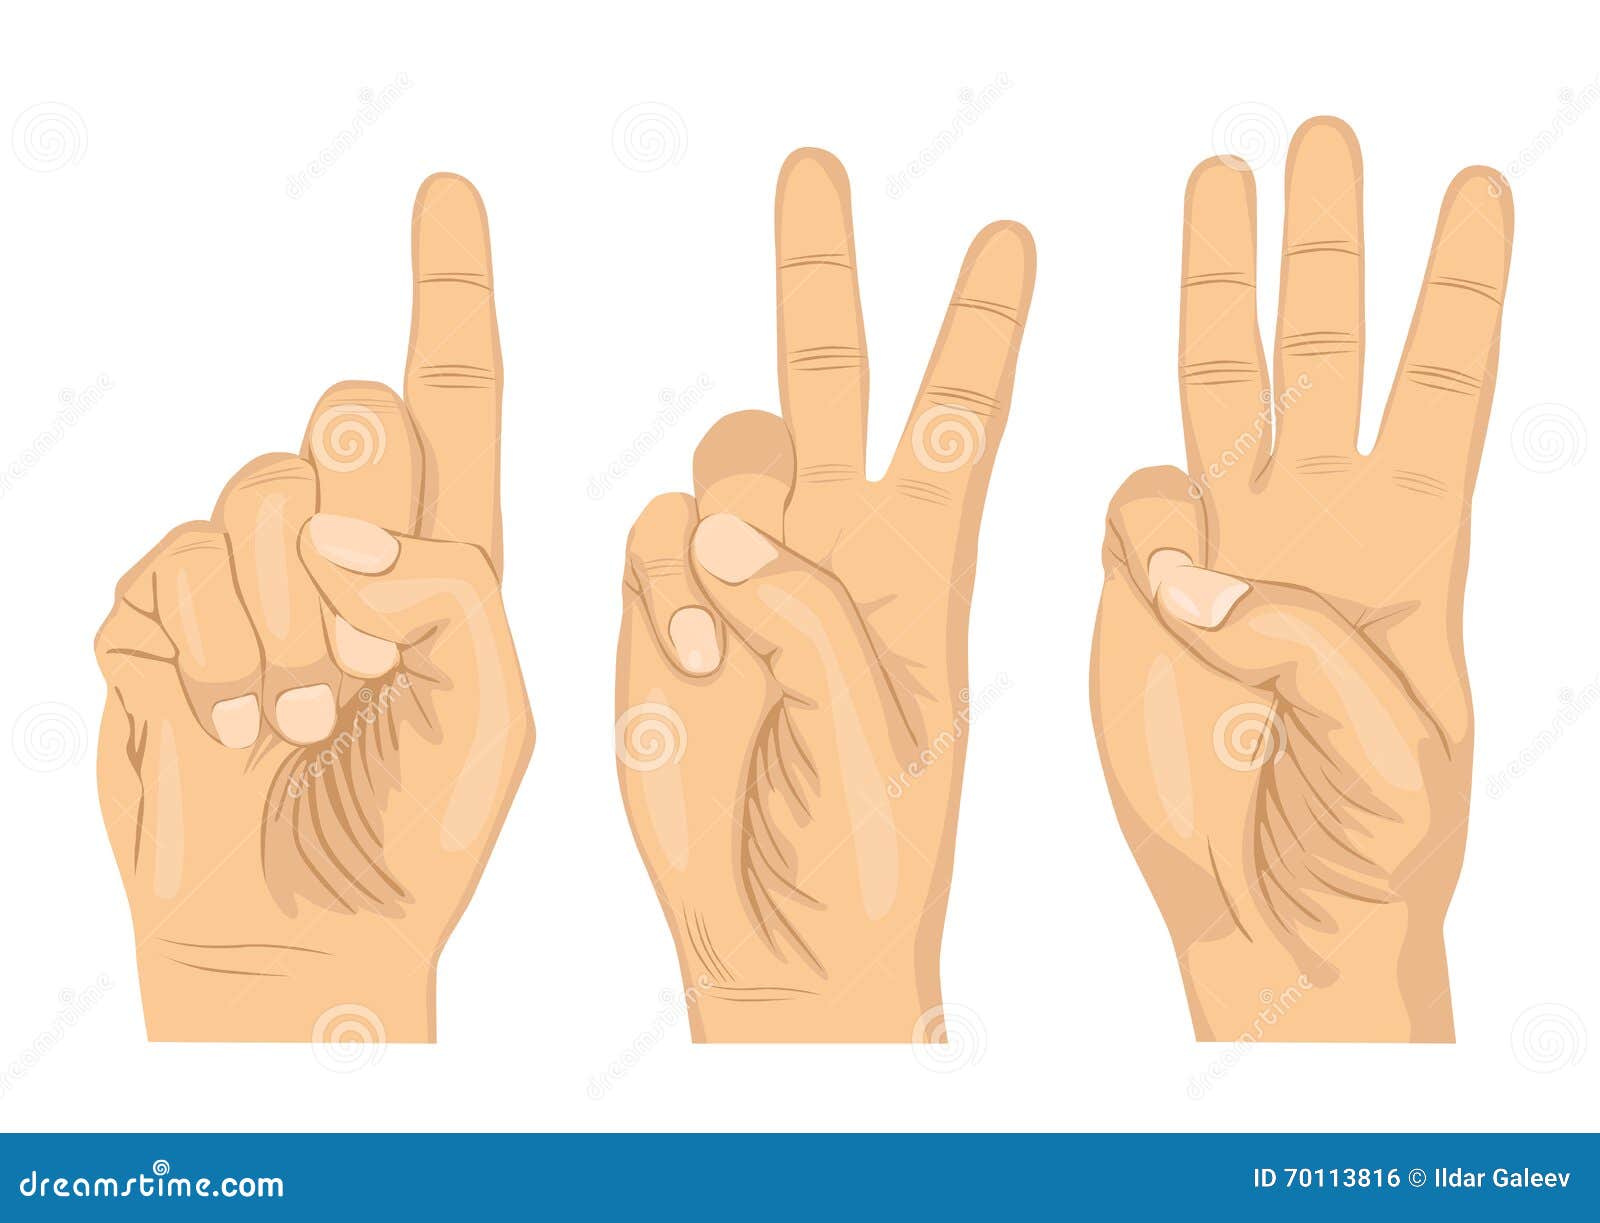 Можно считать на пальцах. Пальцы рук для счета. Три на пальцах картинка. Один два три на пальцах. Счет на пальчиках.